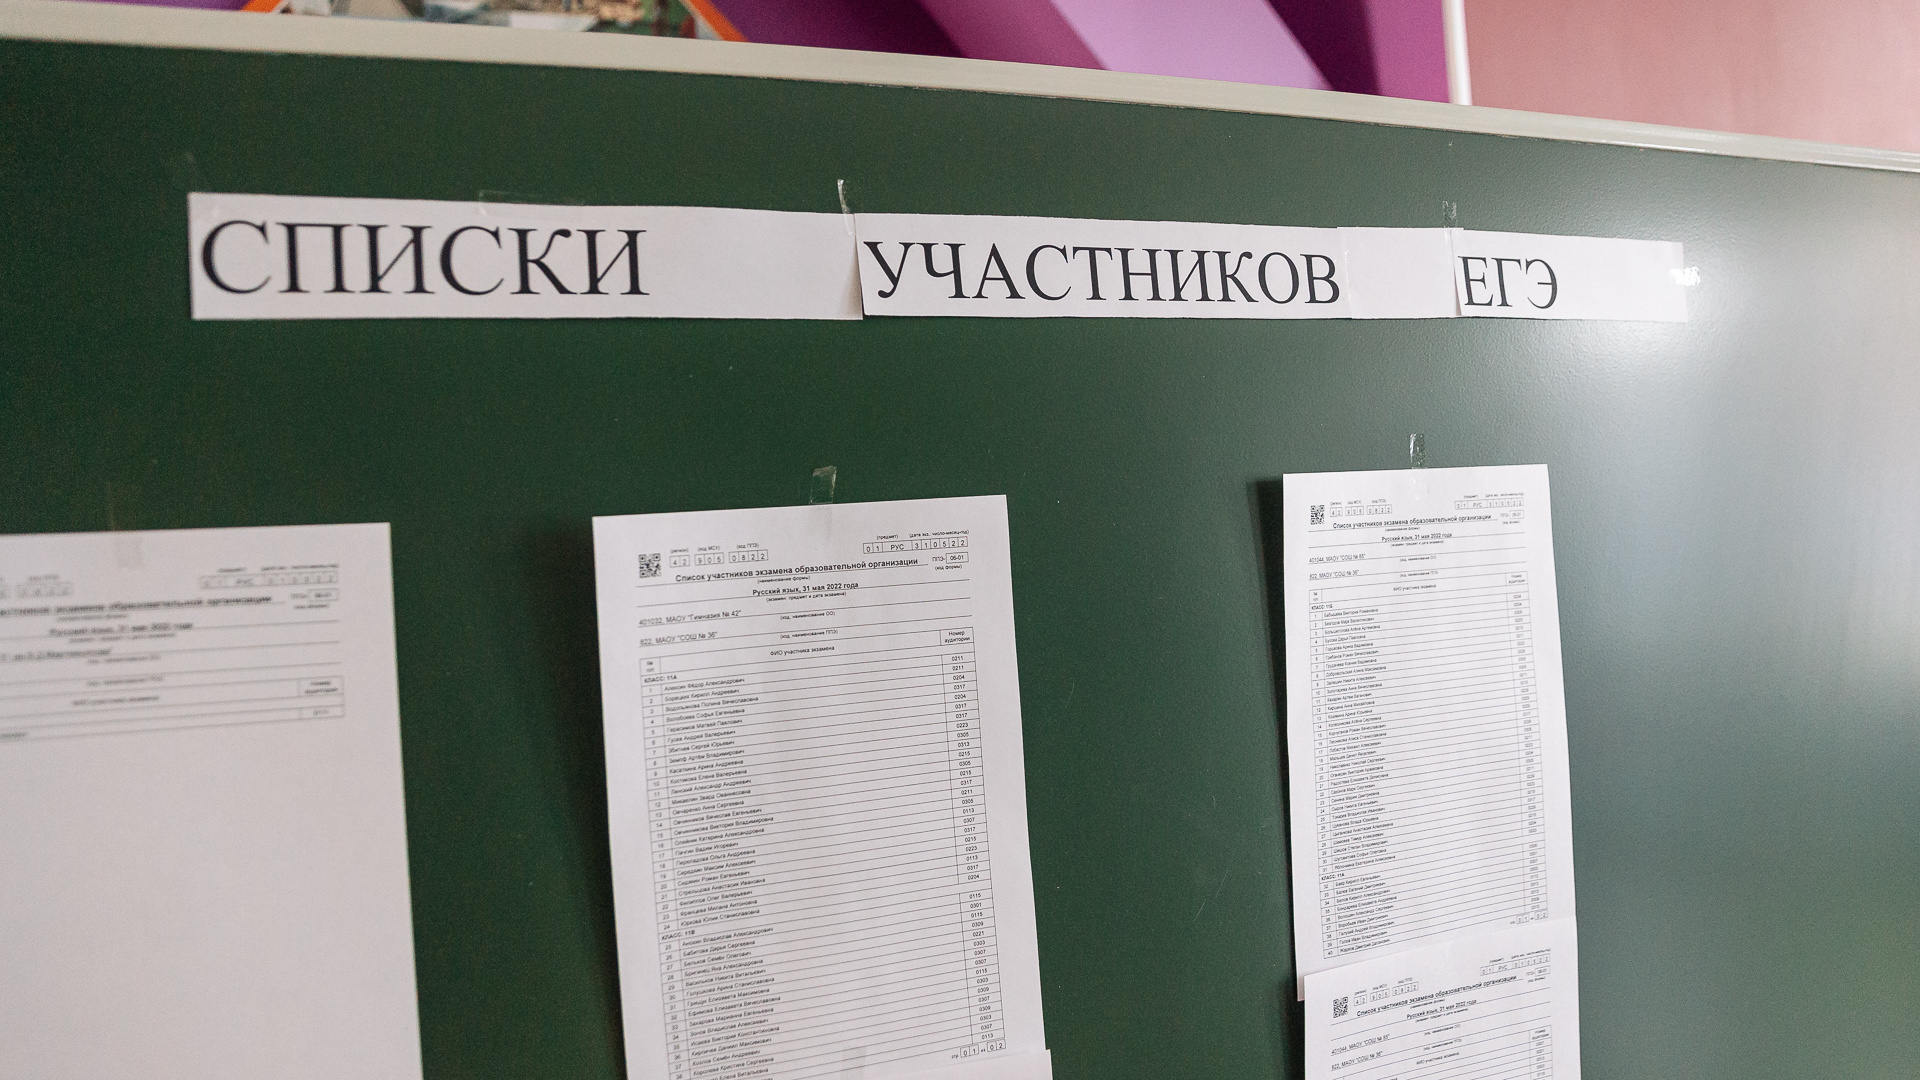 Третья выпускница в Иркутской области стала <nobr class="_">200-балльницей</nobr> по итогам ЕГЭ. Рассказываем, где она учится и какие предметы сдавала